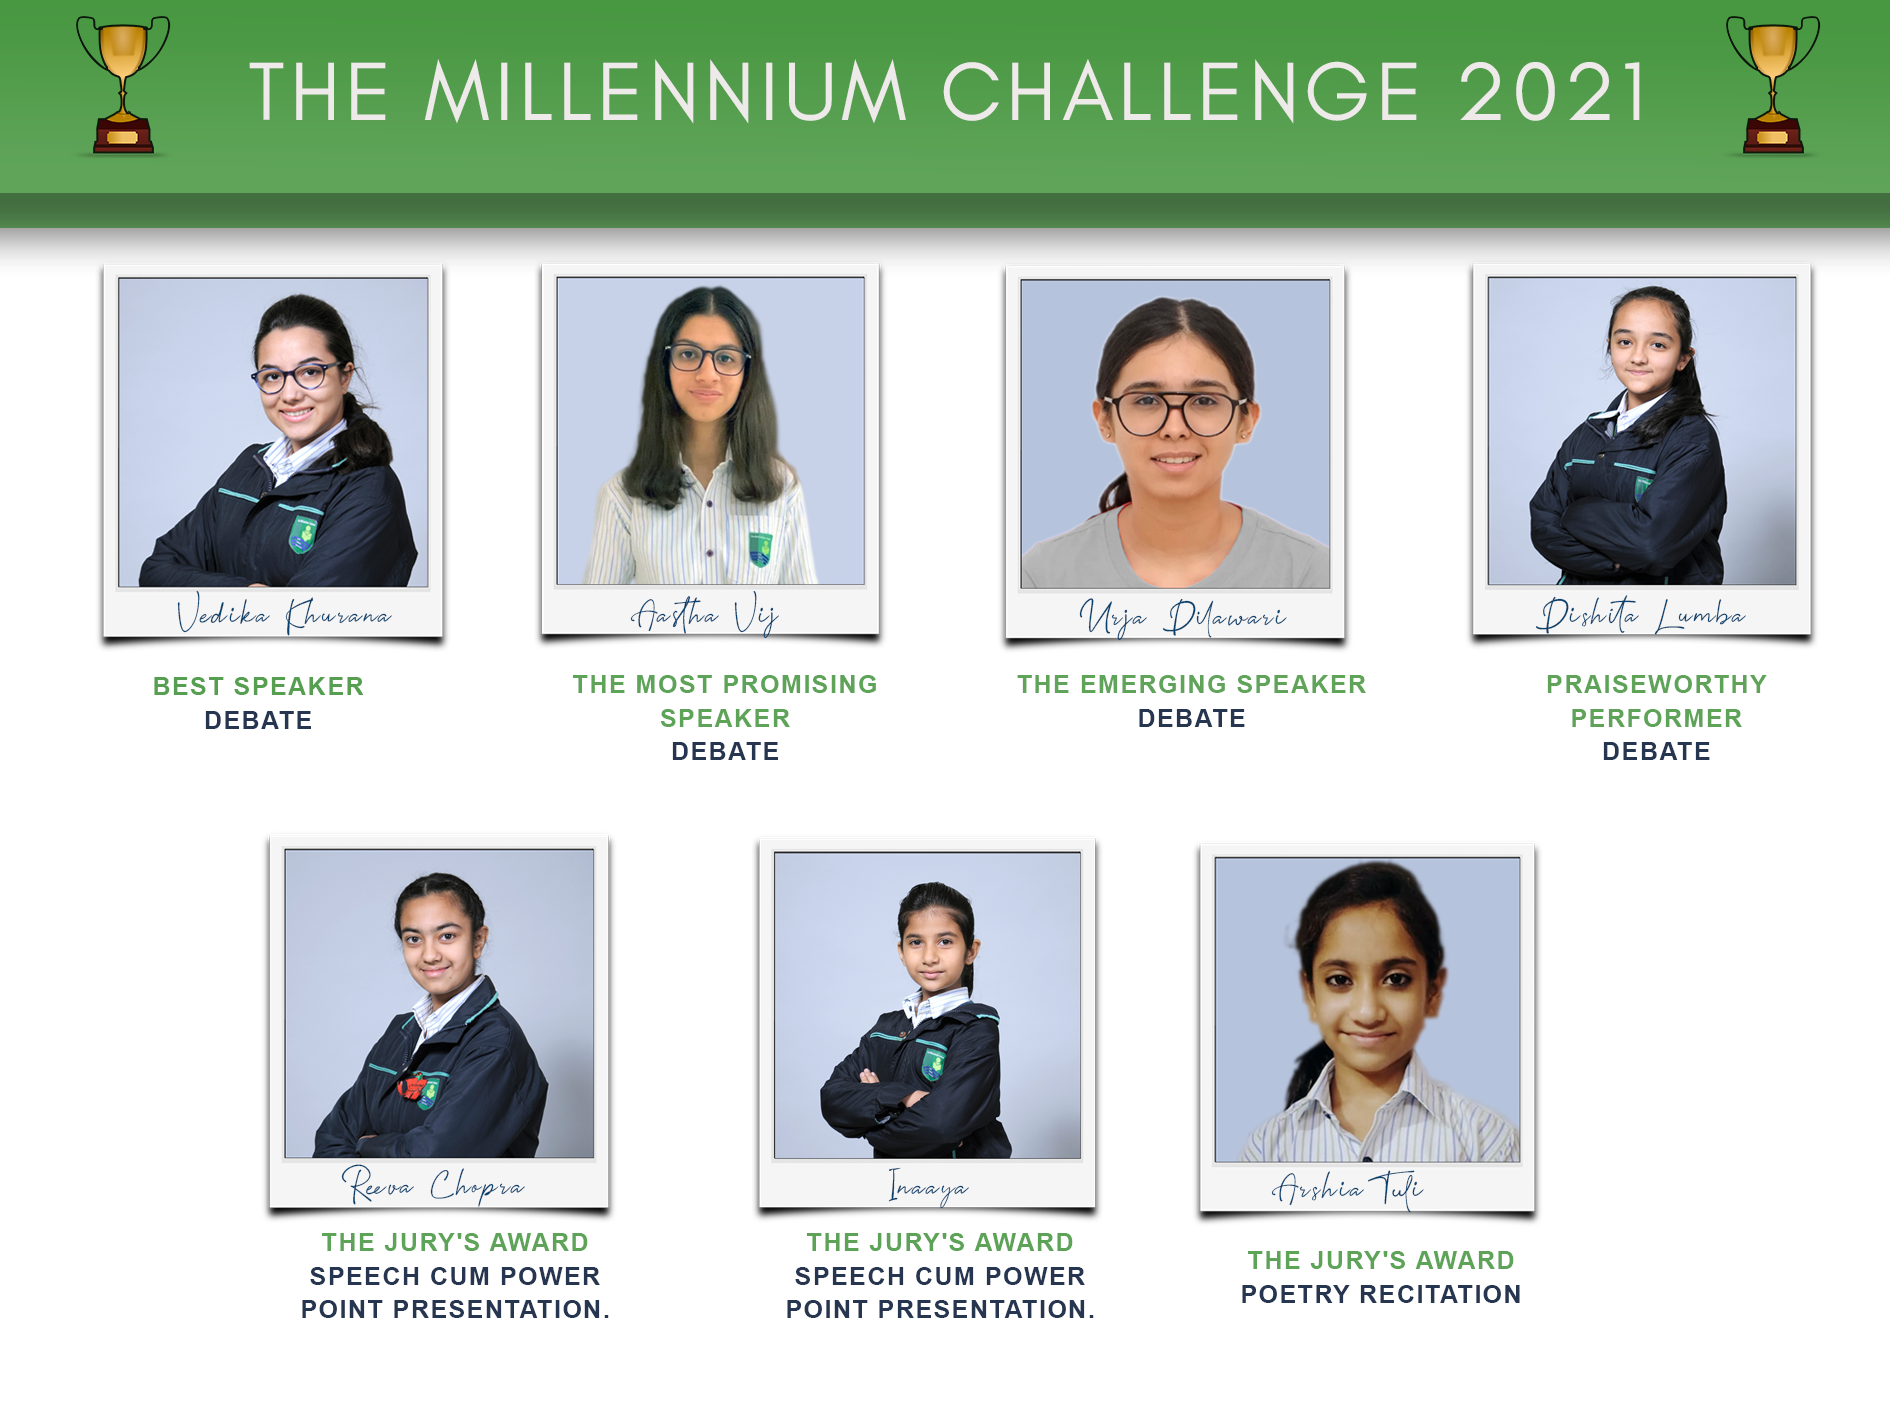 The Millennium Challenge 2021